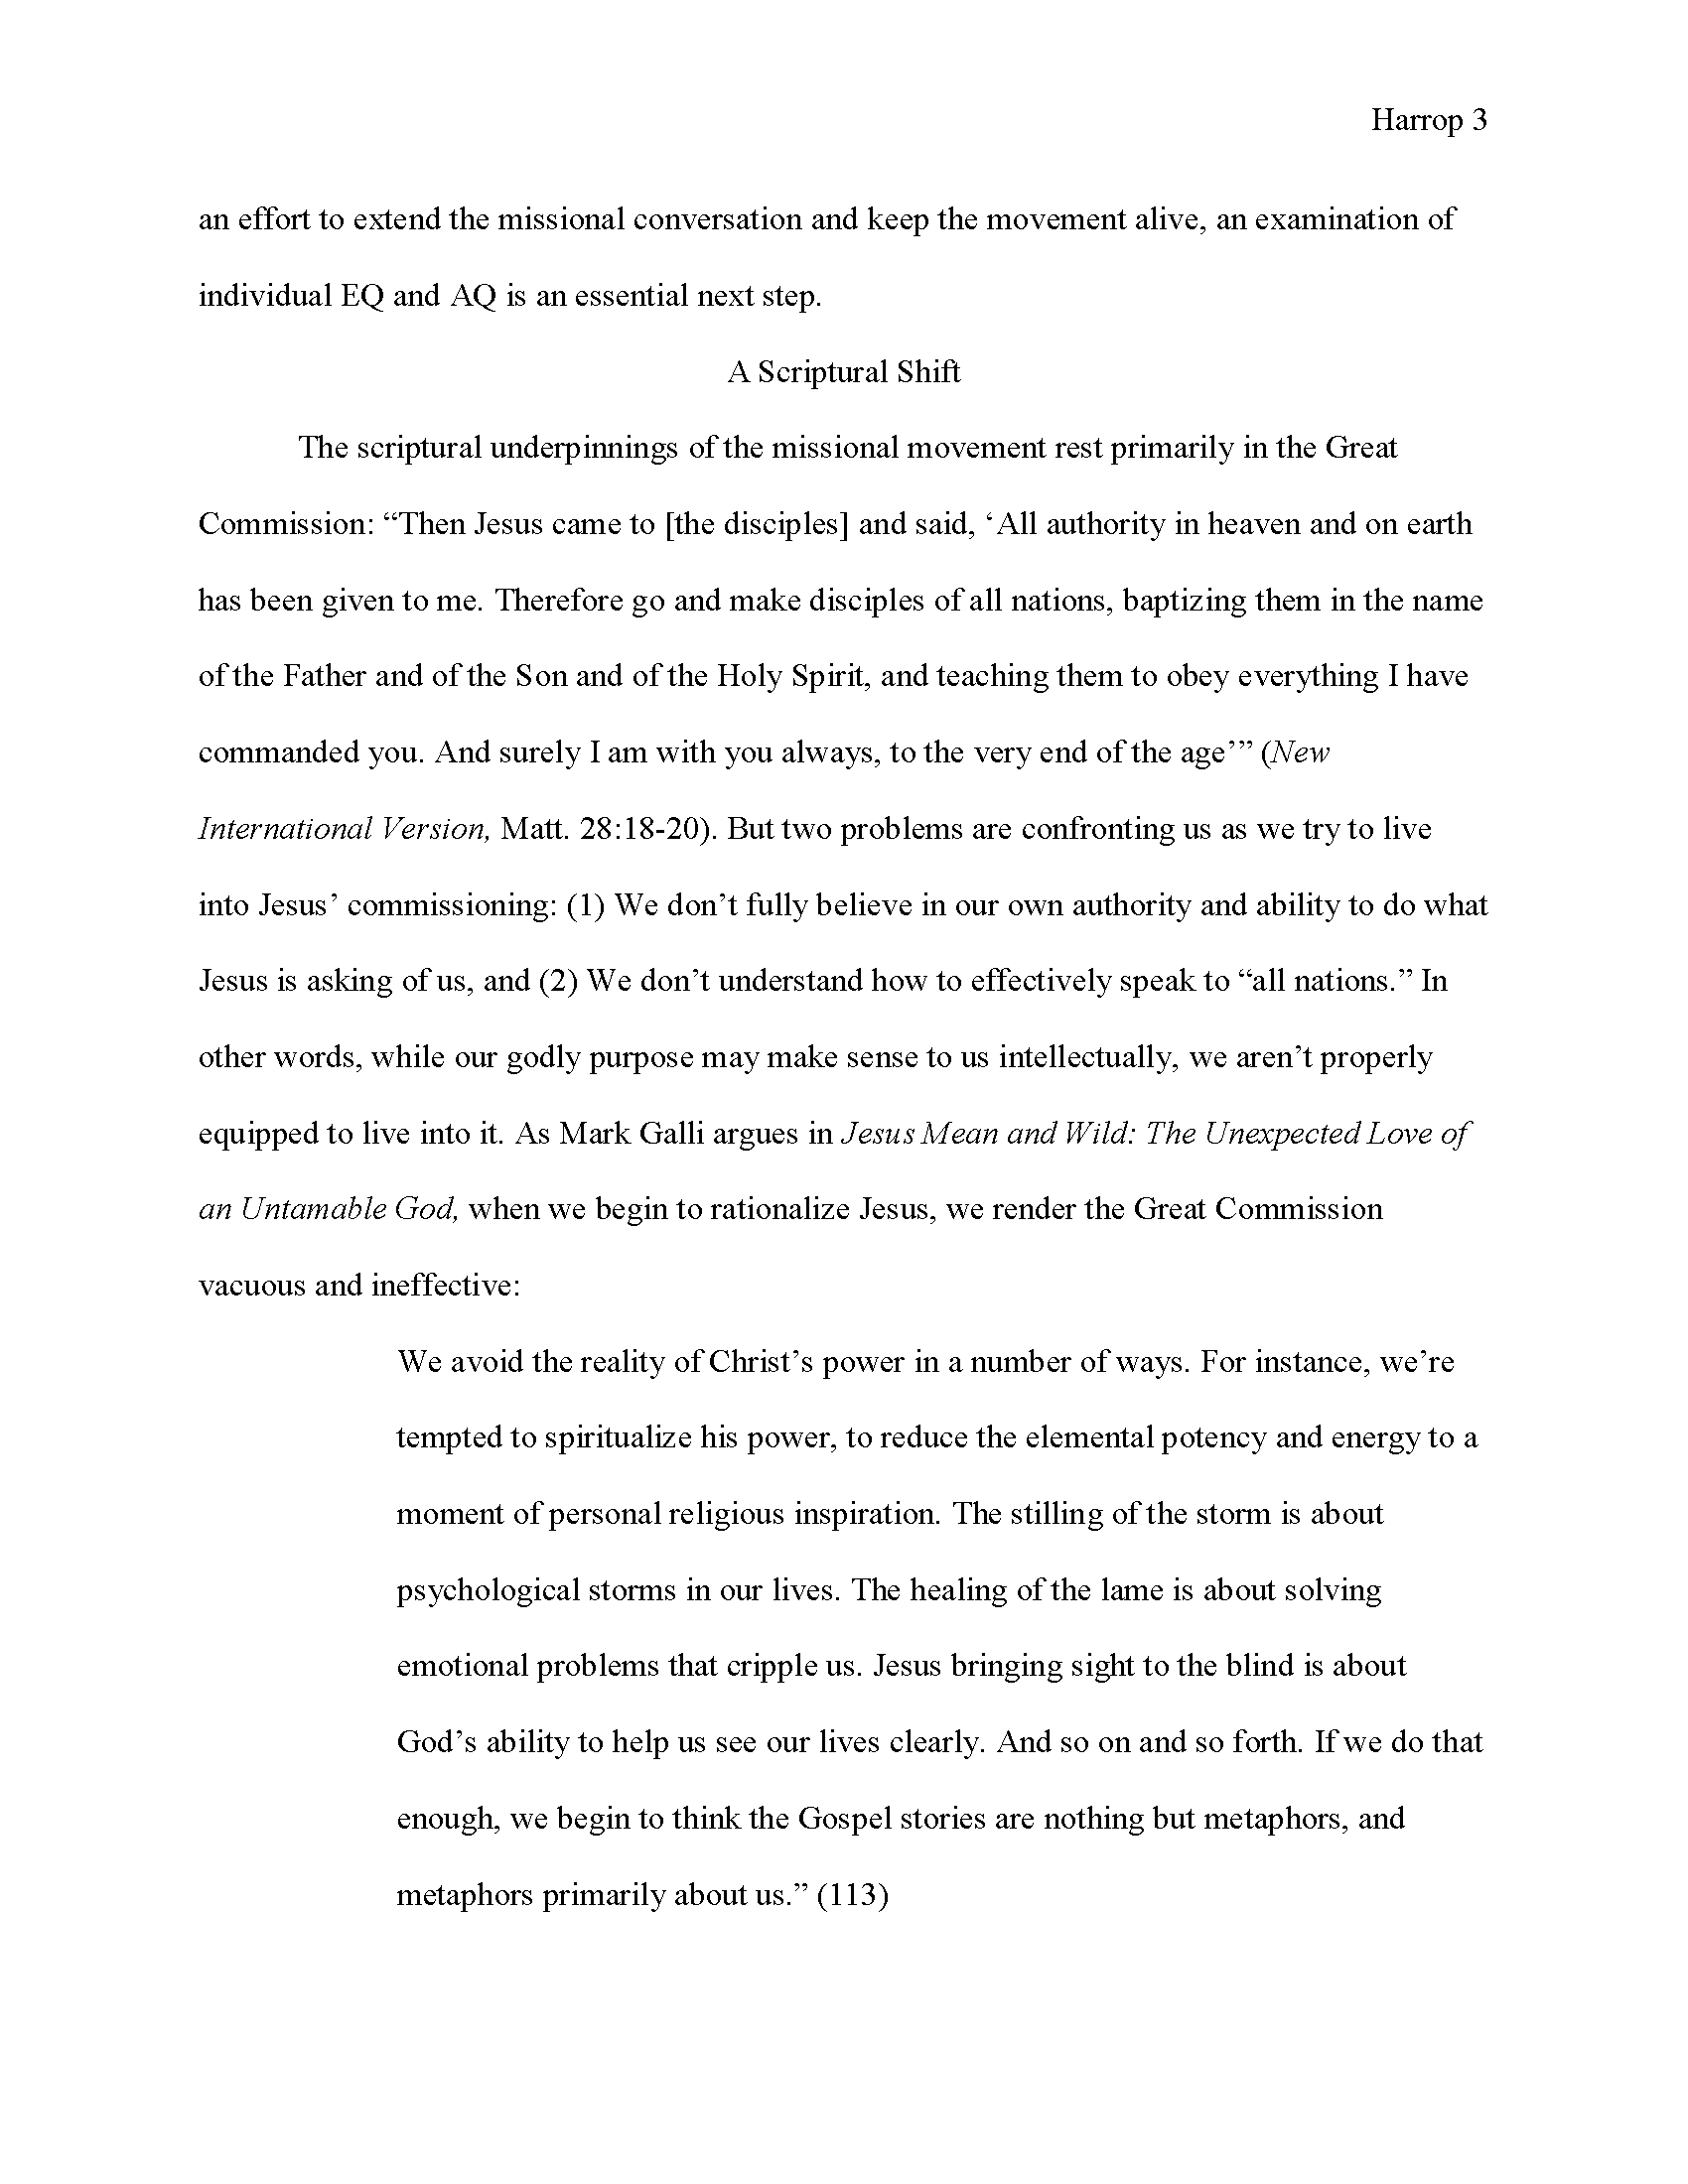 MLA Essay Page 3